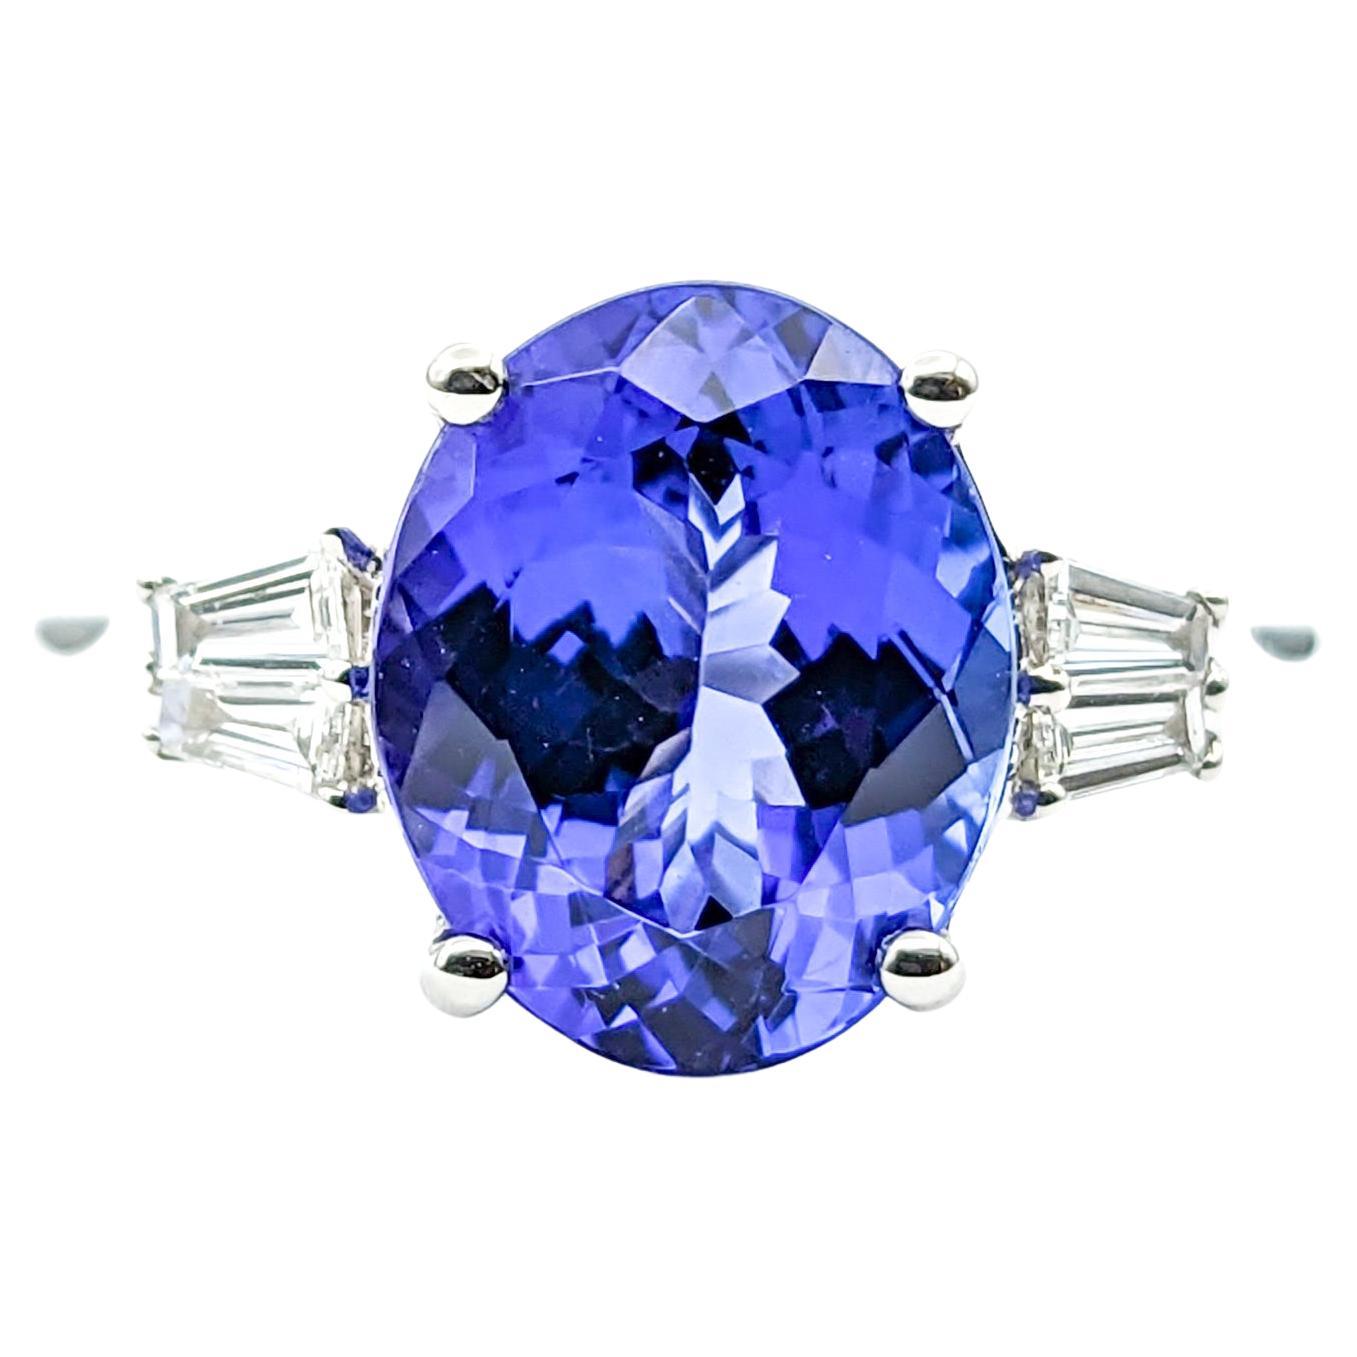 3ct Blue Tanzanite & Diamond Ring In 950pt platinum